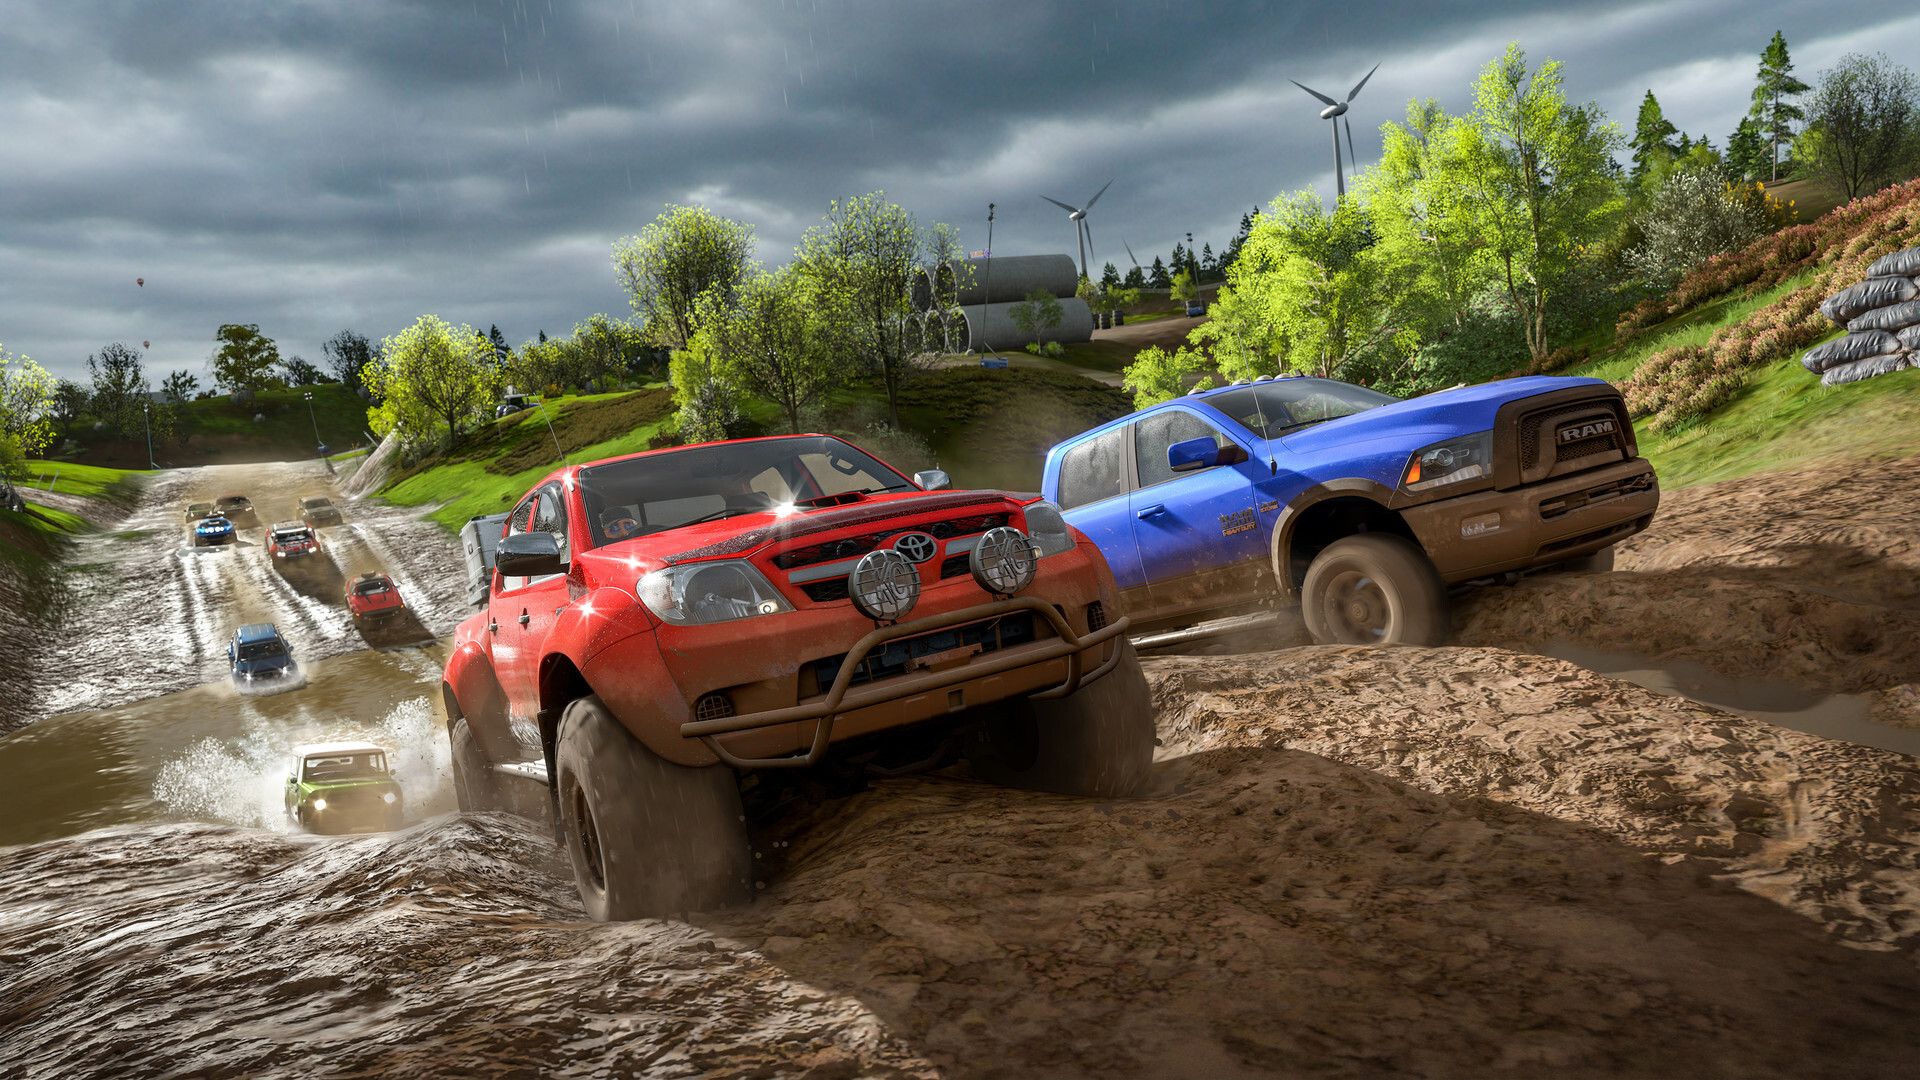 Forza Horizon 4: Standard Edition Xbox One/PC Licença Digital